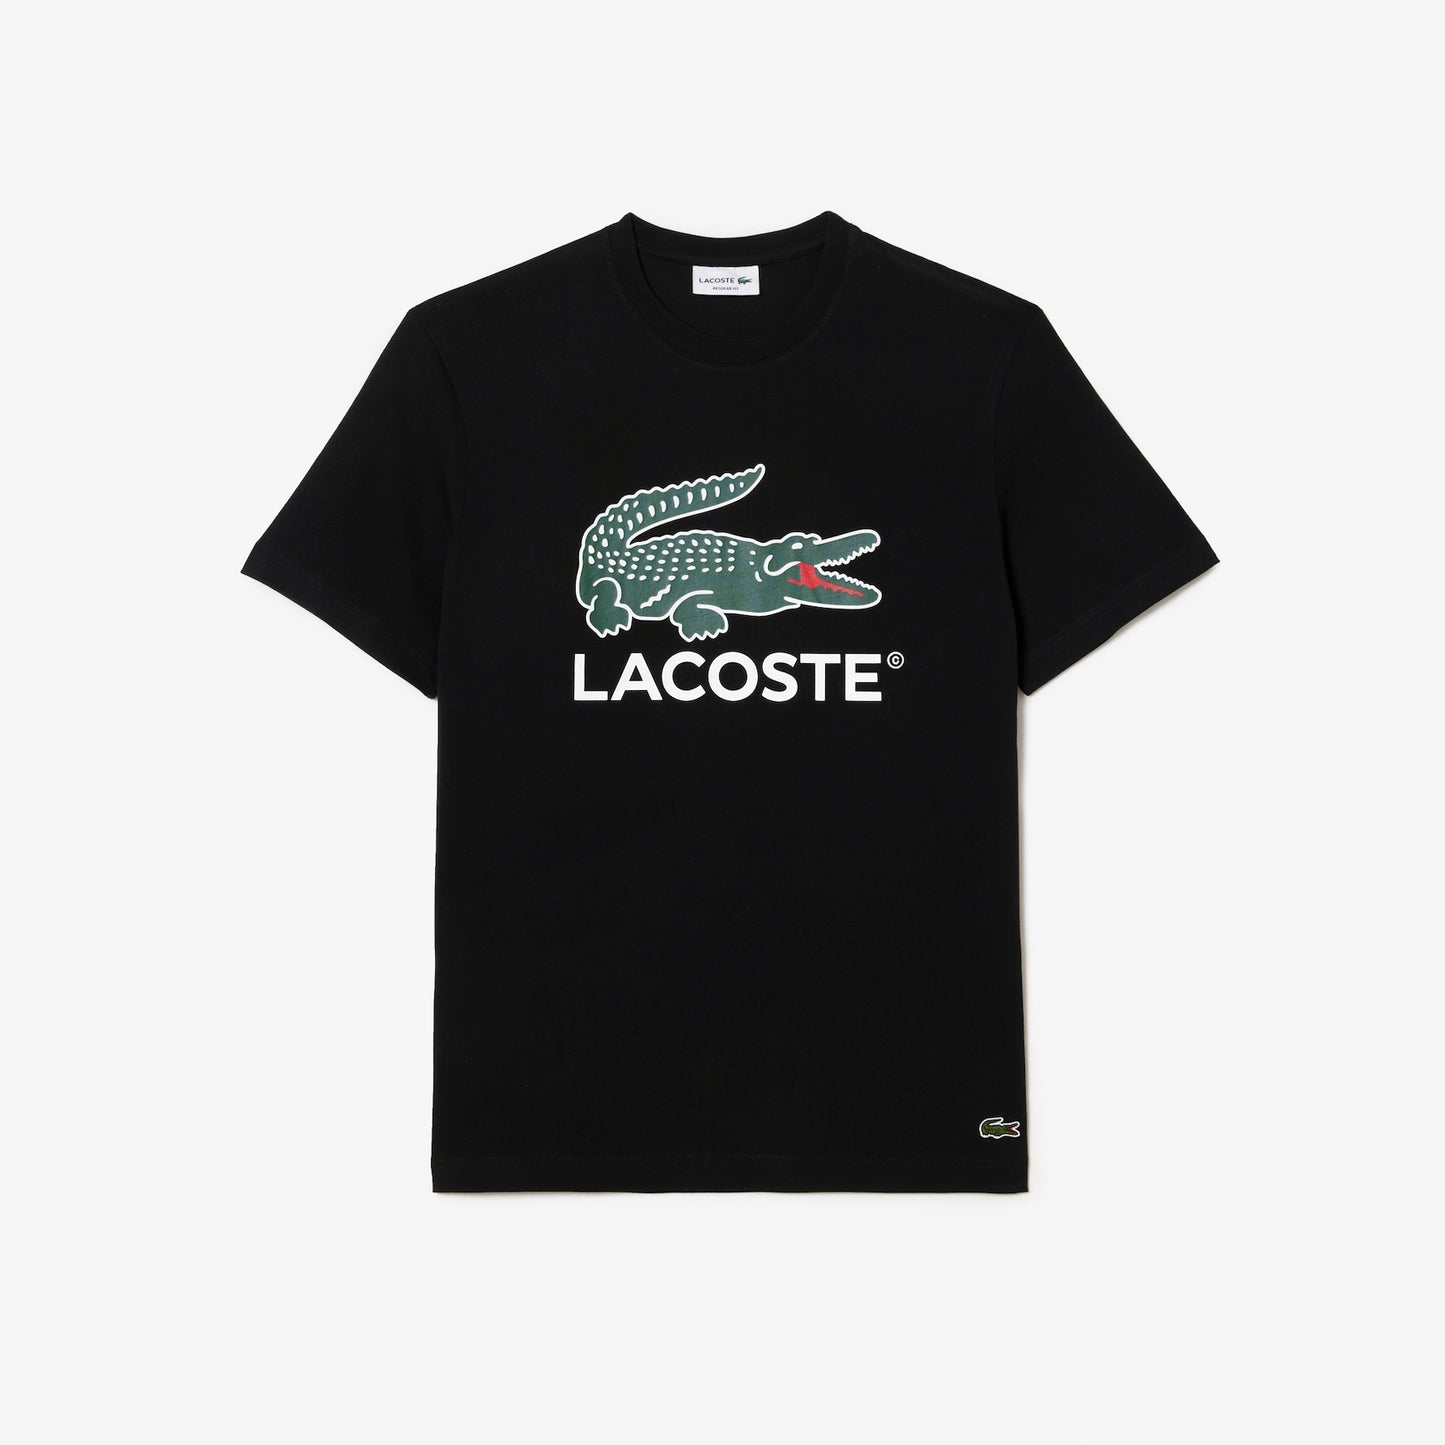 Lacoste - Men's Cotton Jersey Signature Print Shirt - Black